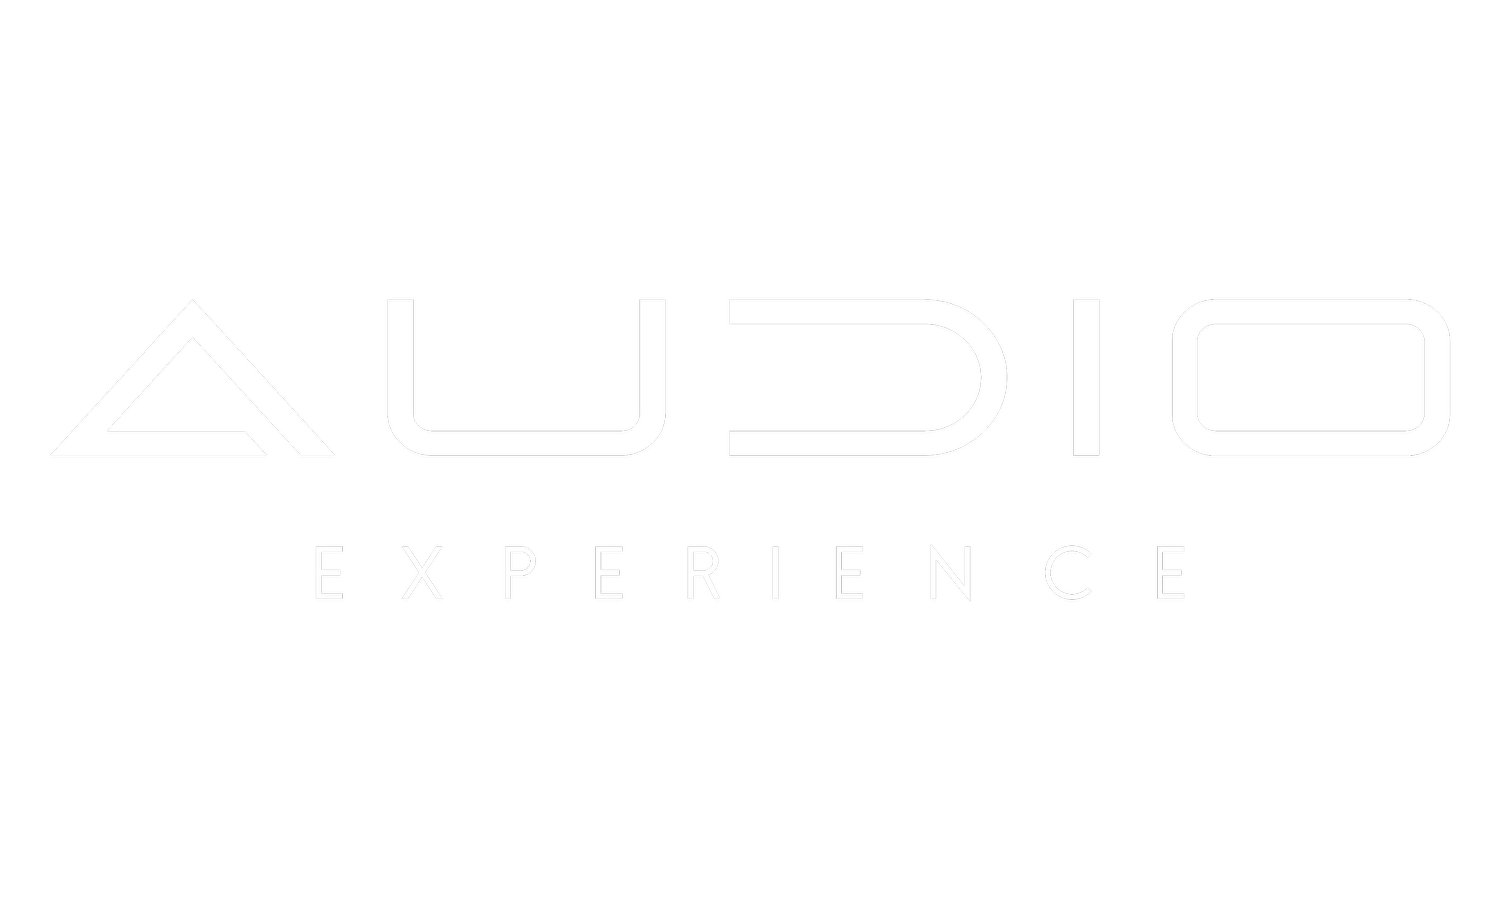 Audio Experience